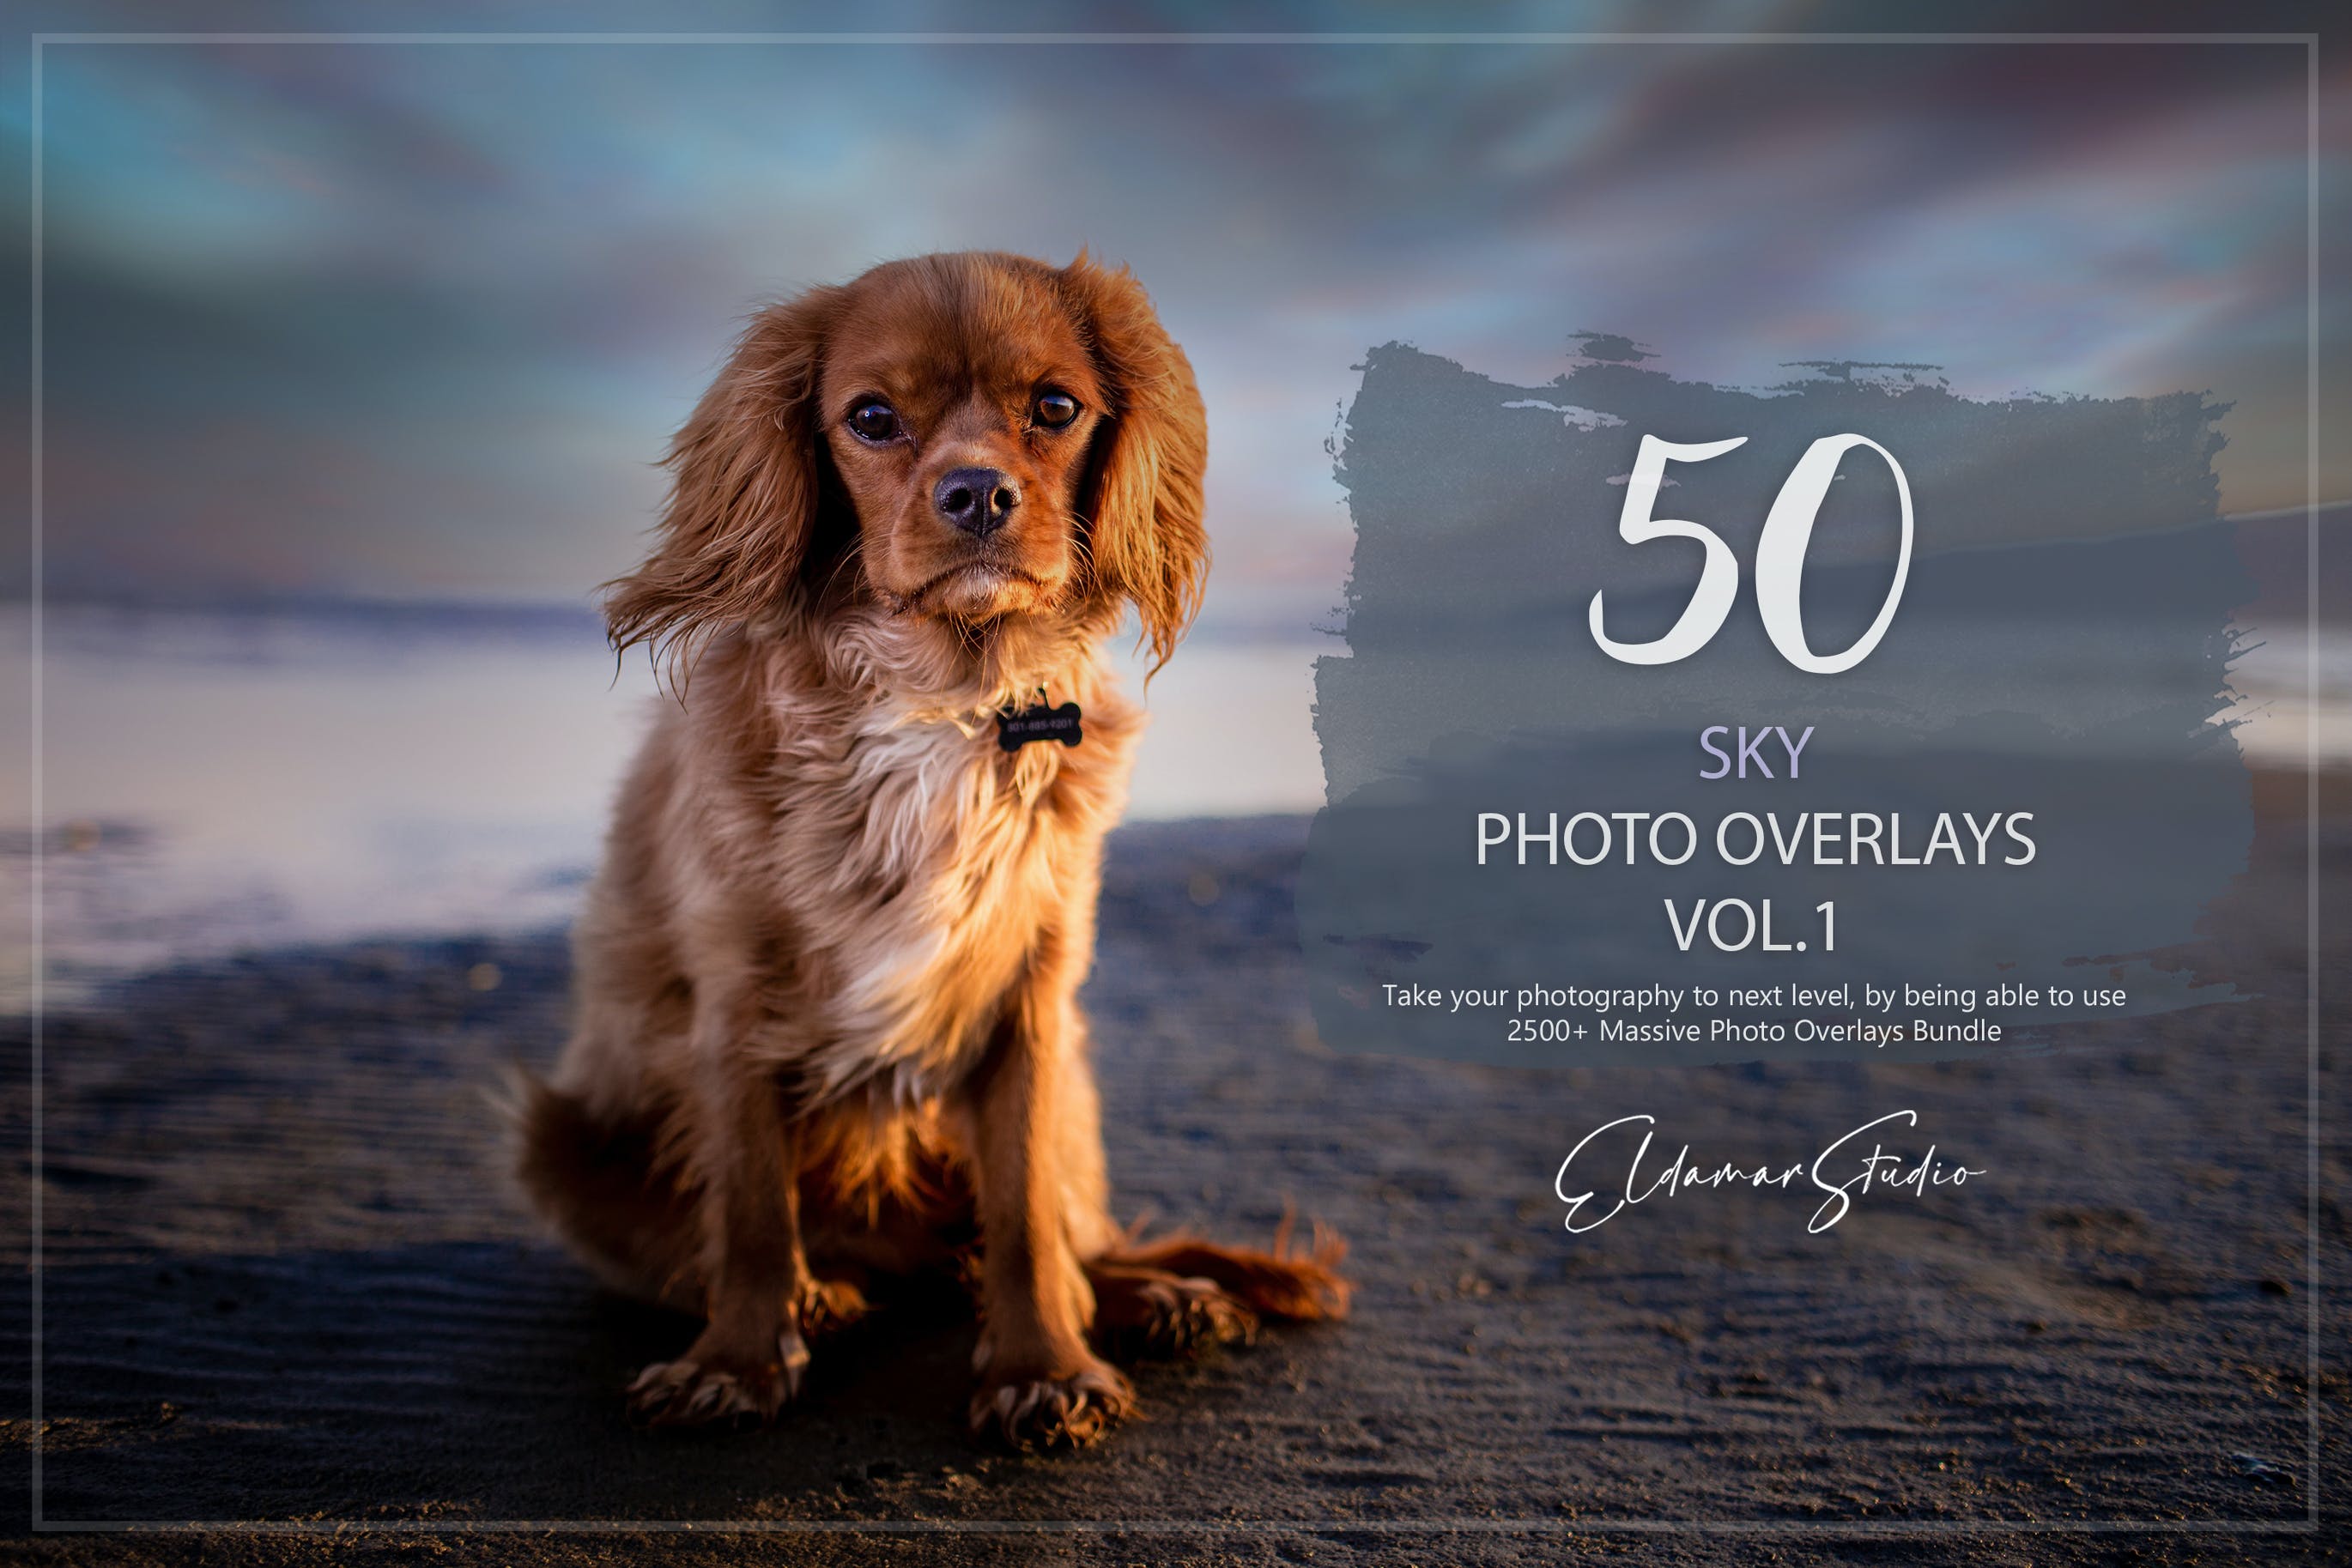 50个天空照片叠层背景素材v1 50 Sky Photo Overlays – Vol. 1 图片素材 第1张